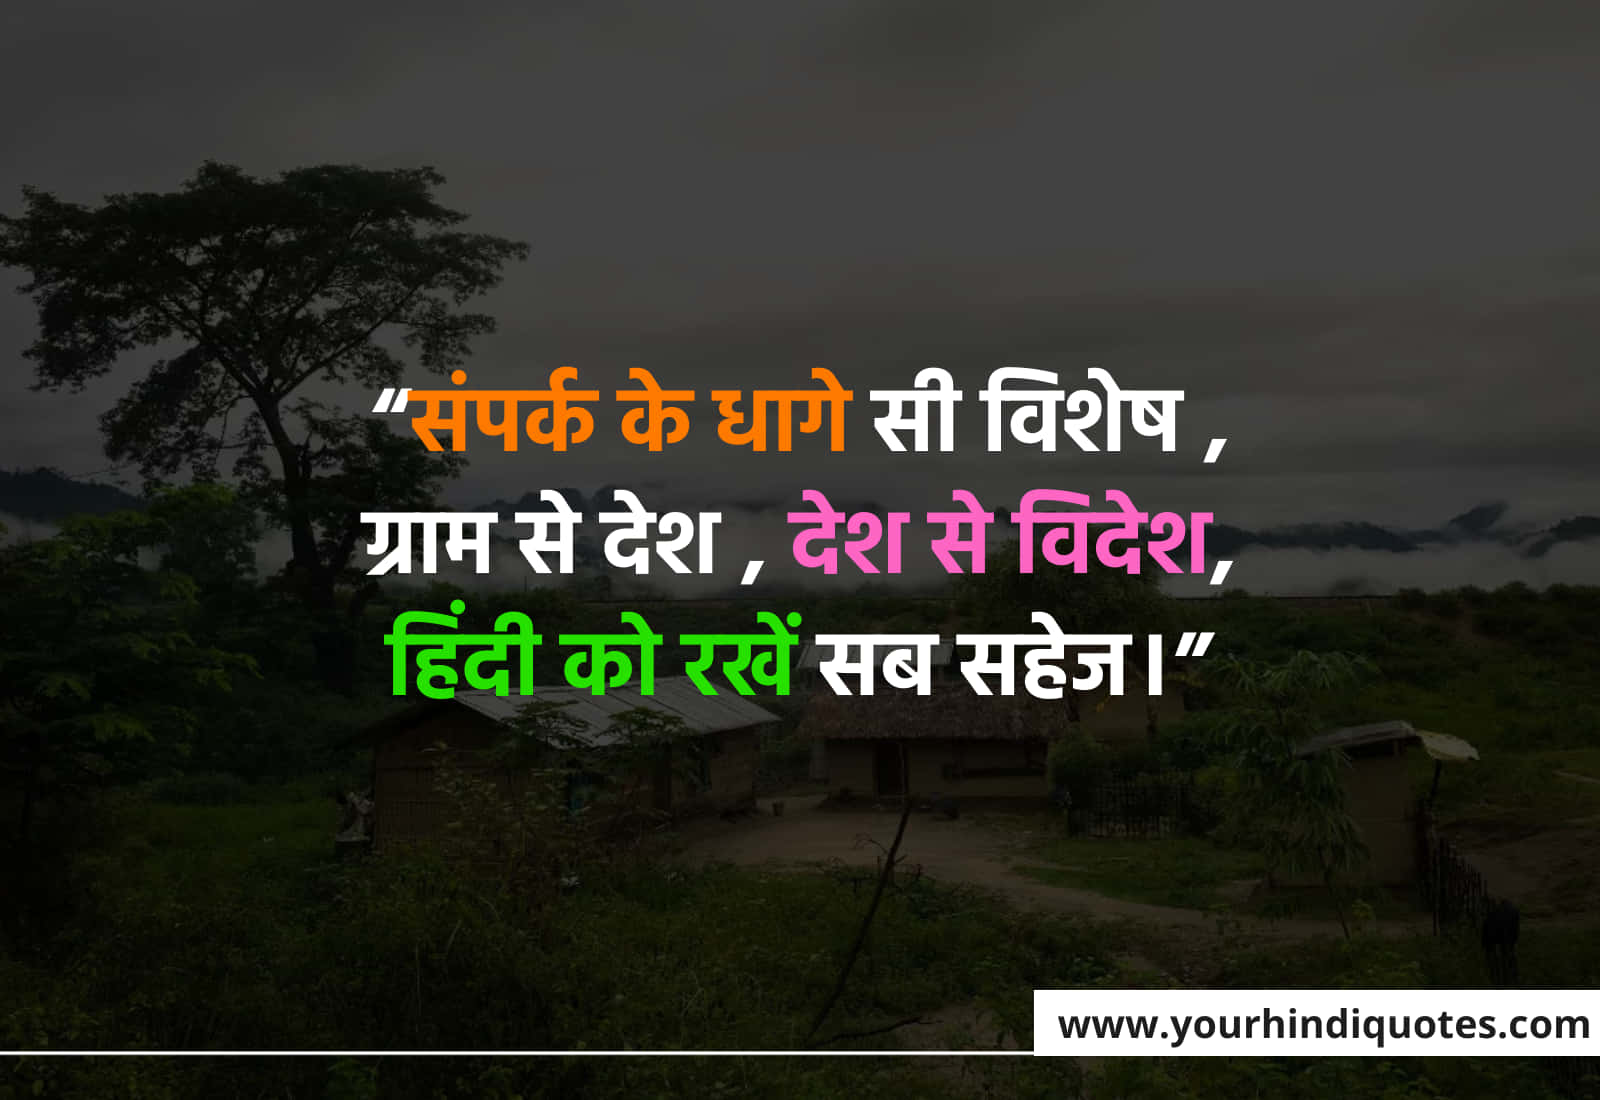 Hindi Diwas Quotes In Hindi